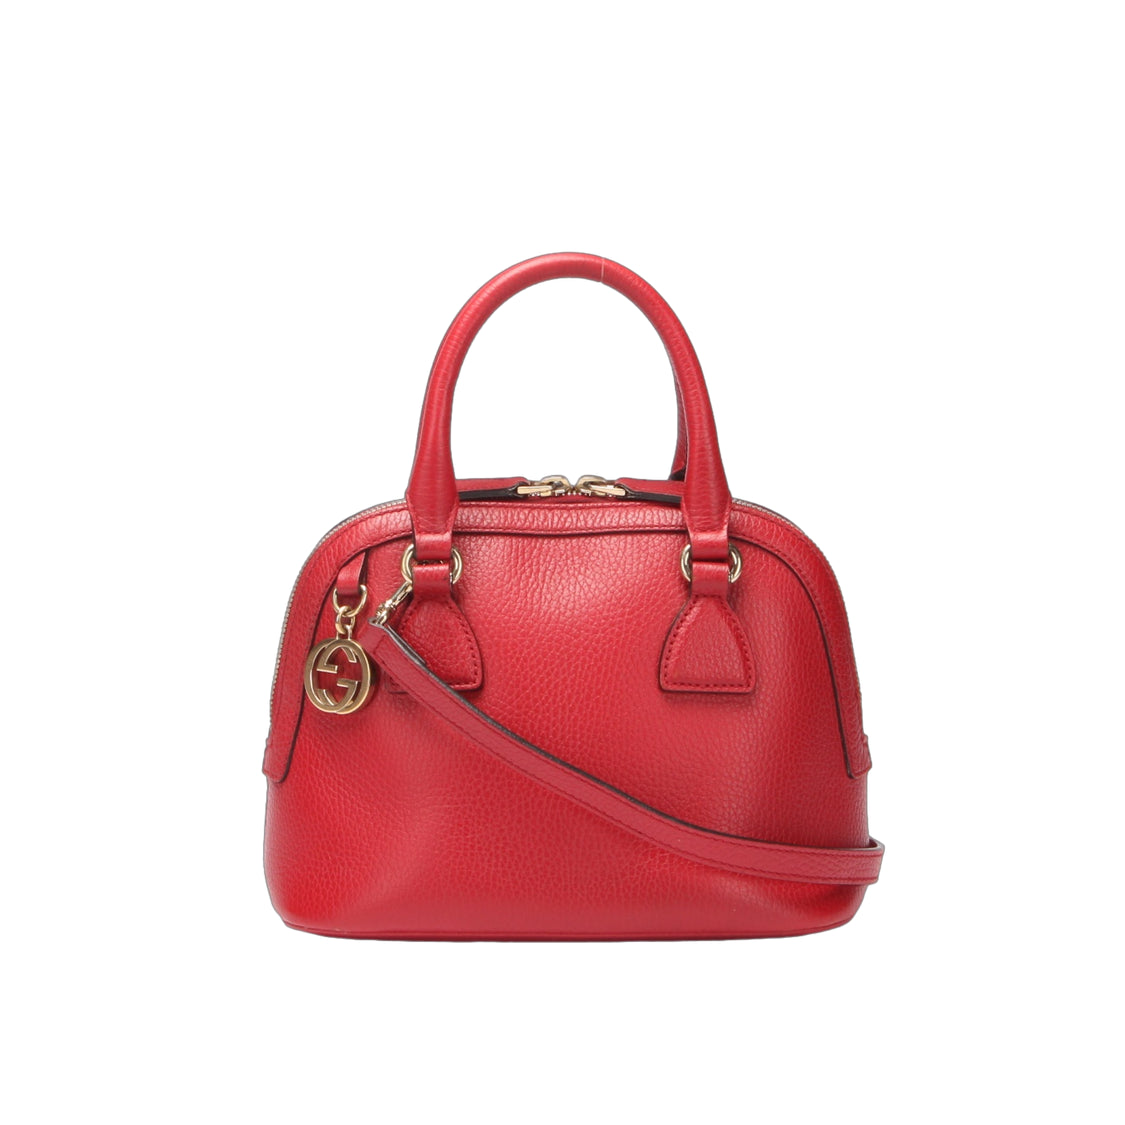 GG Charm Leather Handbag